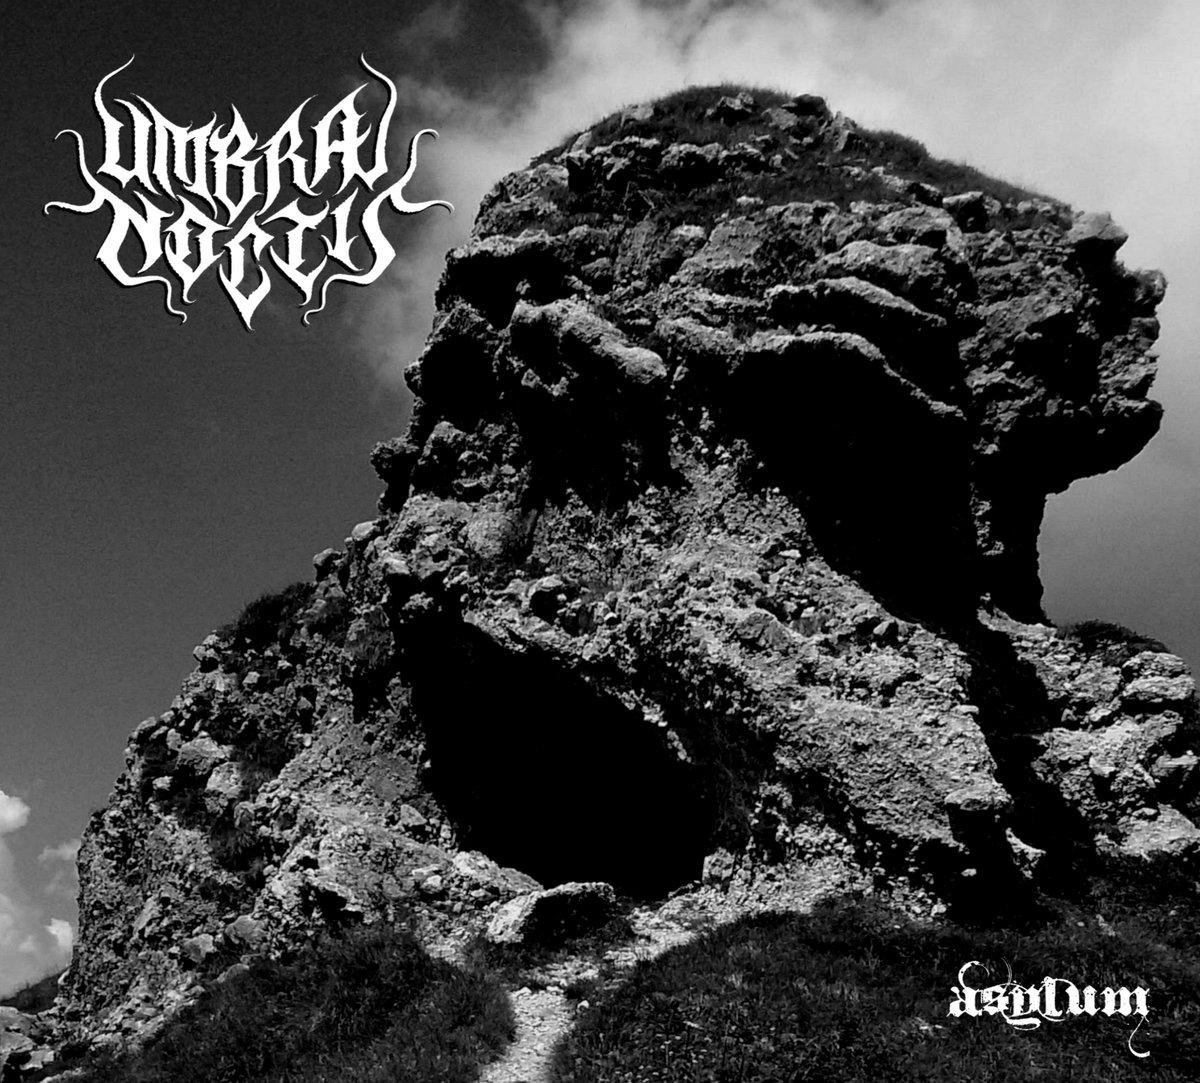 Umbra Noctis - In uscita via Drakkar Production il nuovo album "Asylum"